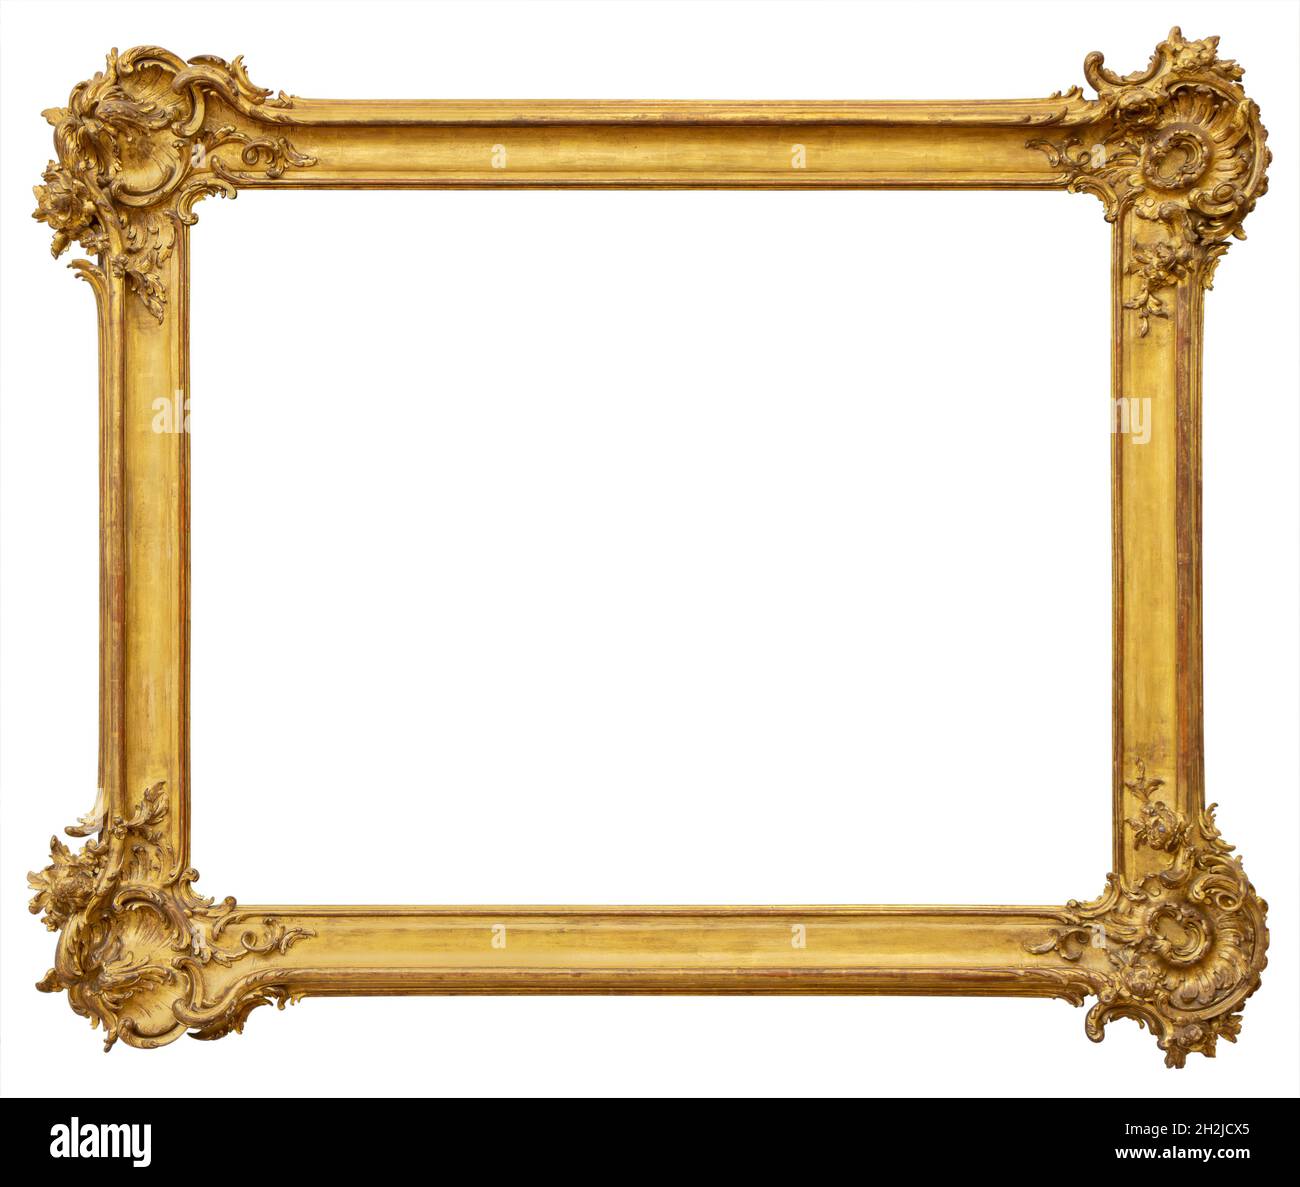 Imagen de marco dorado Imágenes recortadas de stock - Página 2 - Alamy